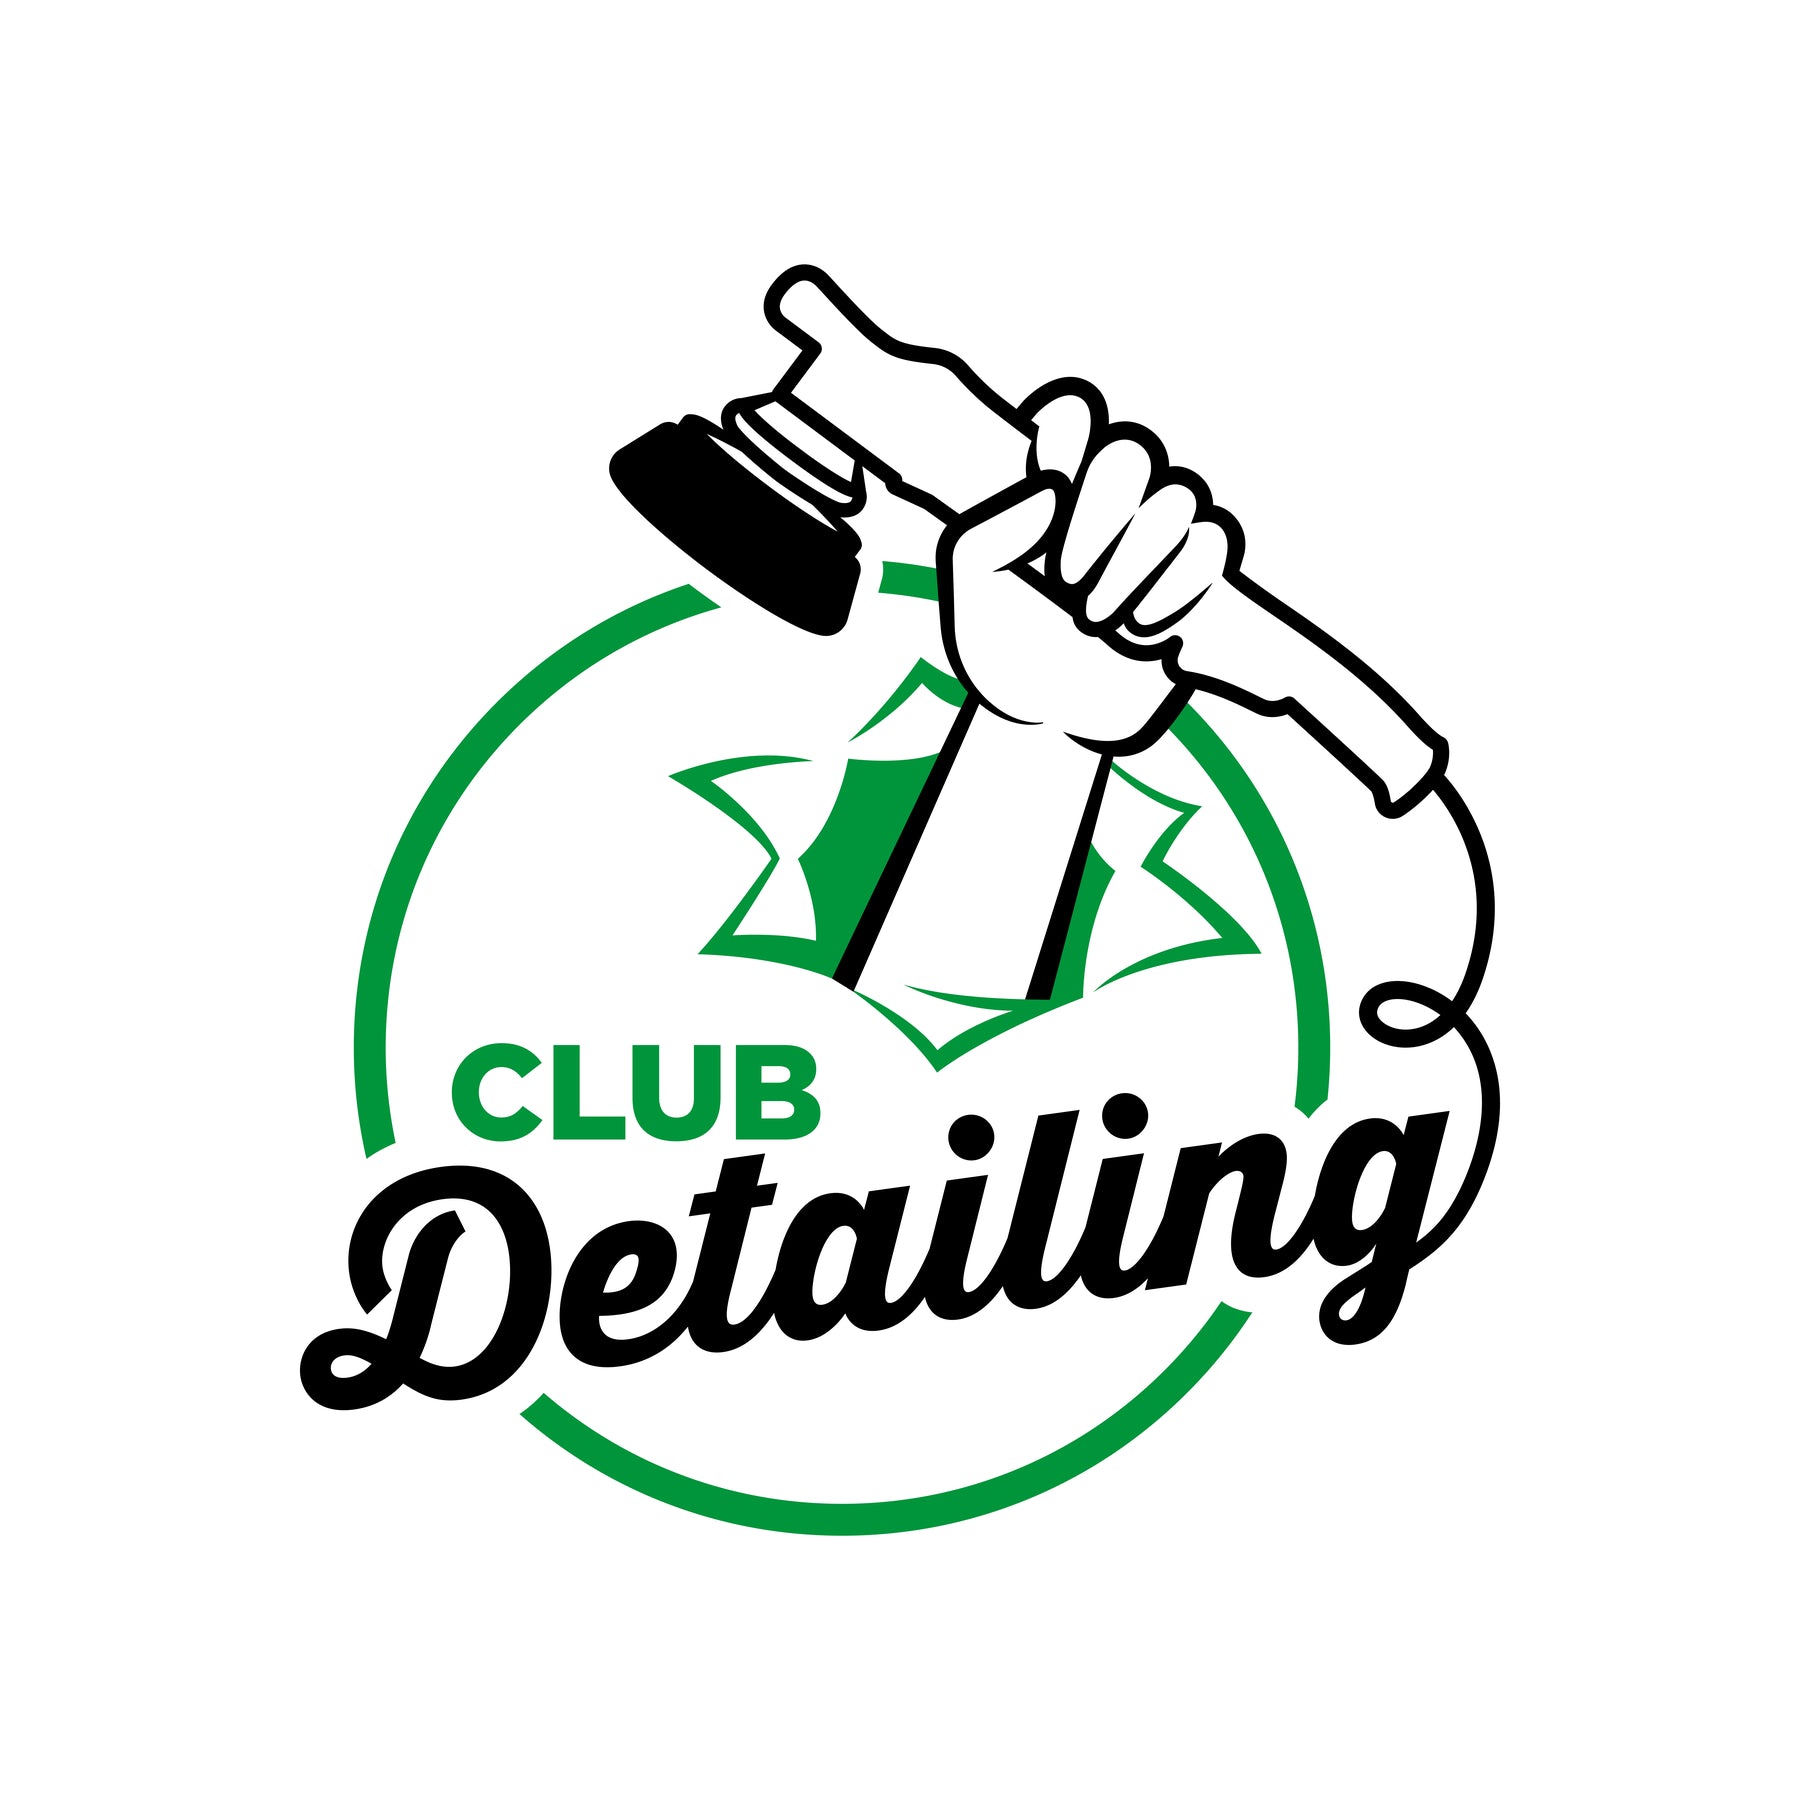 Club Detailing - Abonnement Annuel Passion Detailing